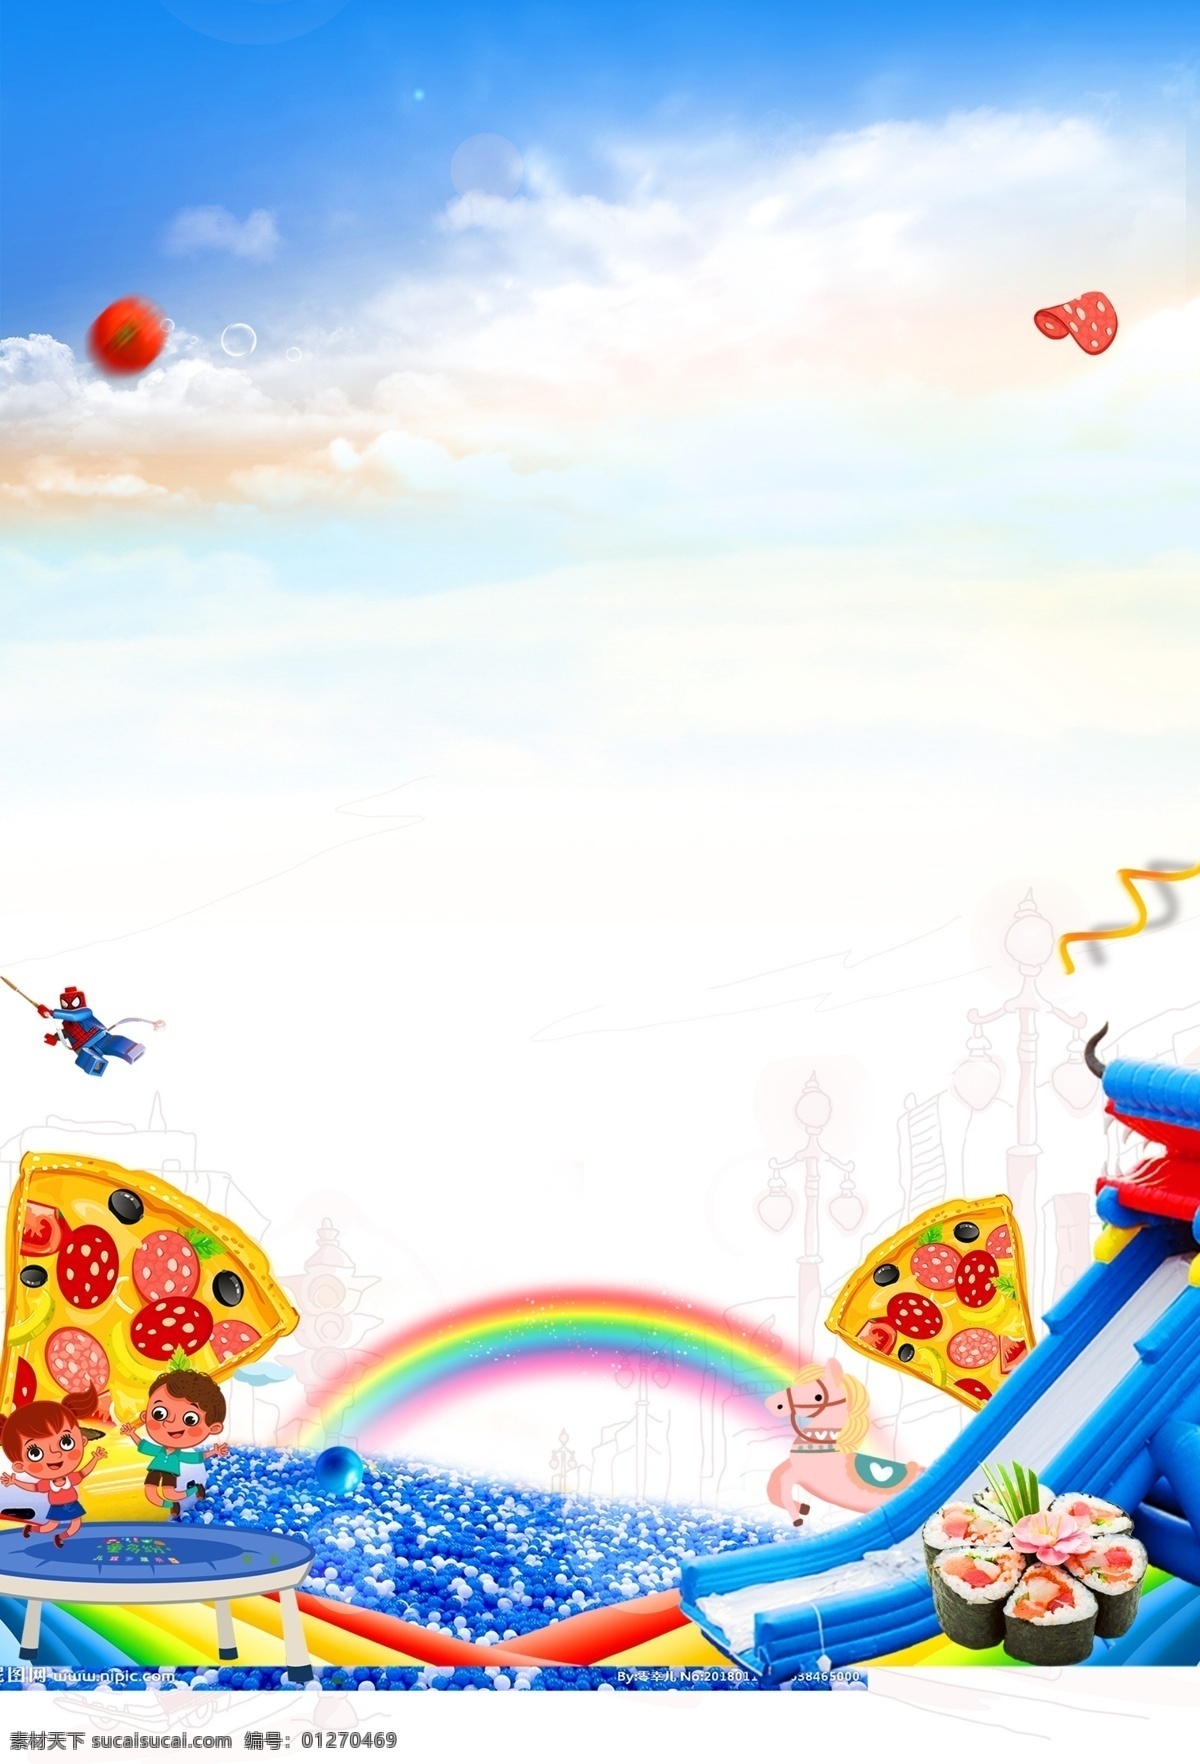 海洋 球 披萨 投篮 童话 大世界 海洋球 美食 投篮机 儿童 彩虹 海报 地产 活动